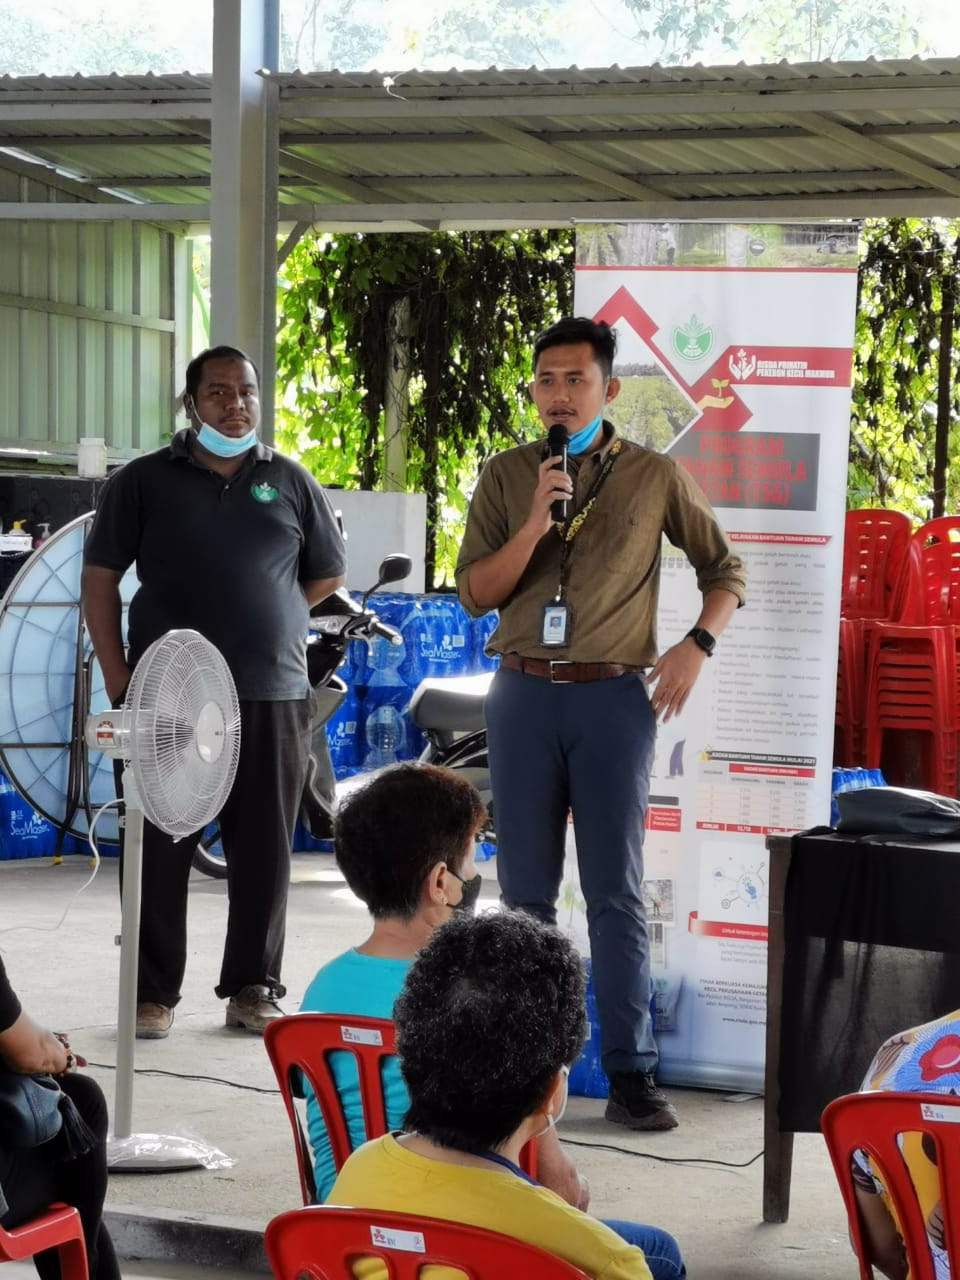 橡胶局到加叻村办活动 讲解控制橡胶树疾病